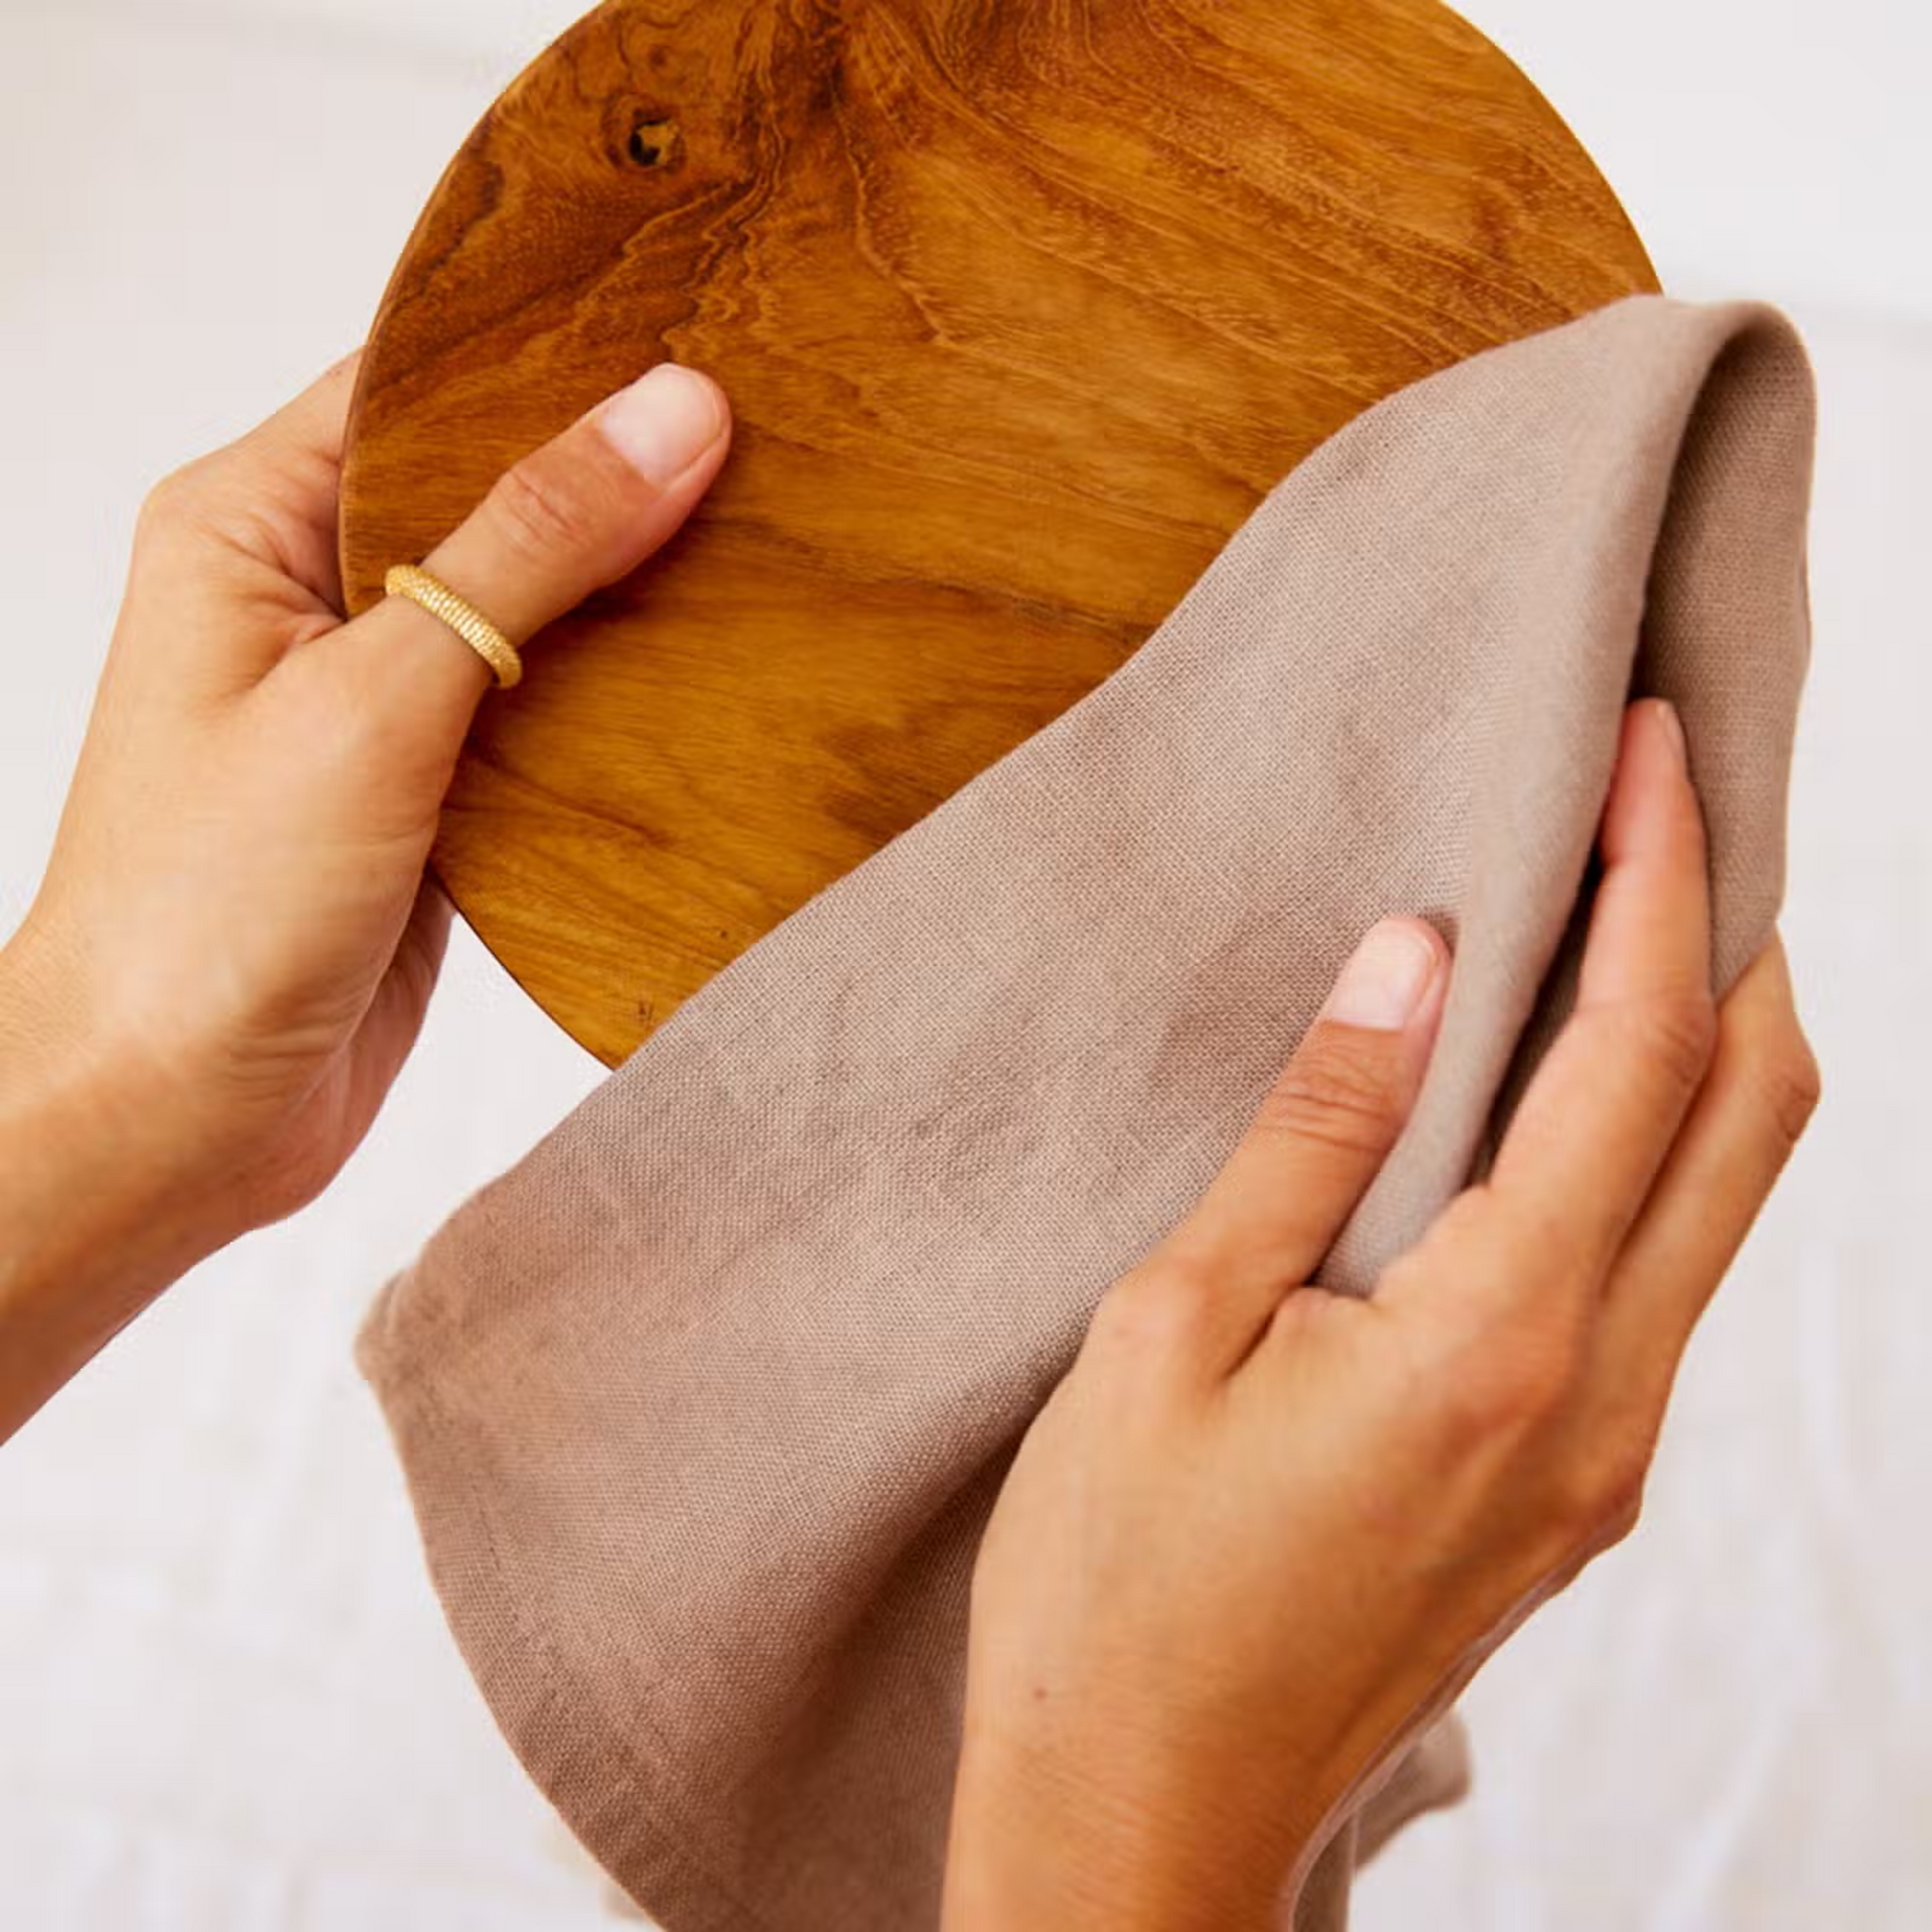 Zwei Hände reinigen eine Holzplatte mit einem grauen Geschirrtuch der Marke Greentastic